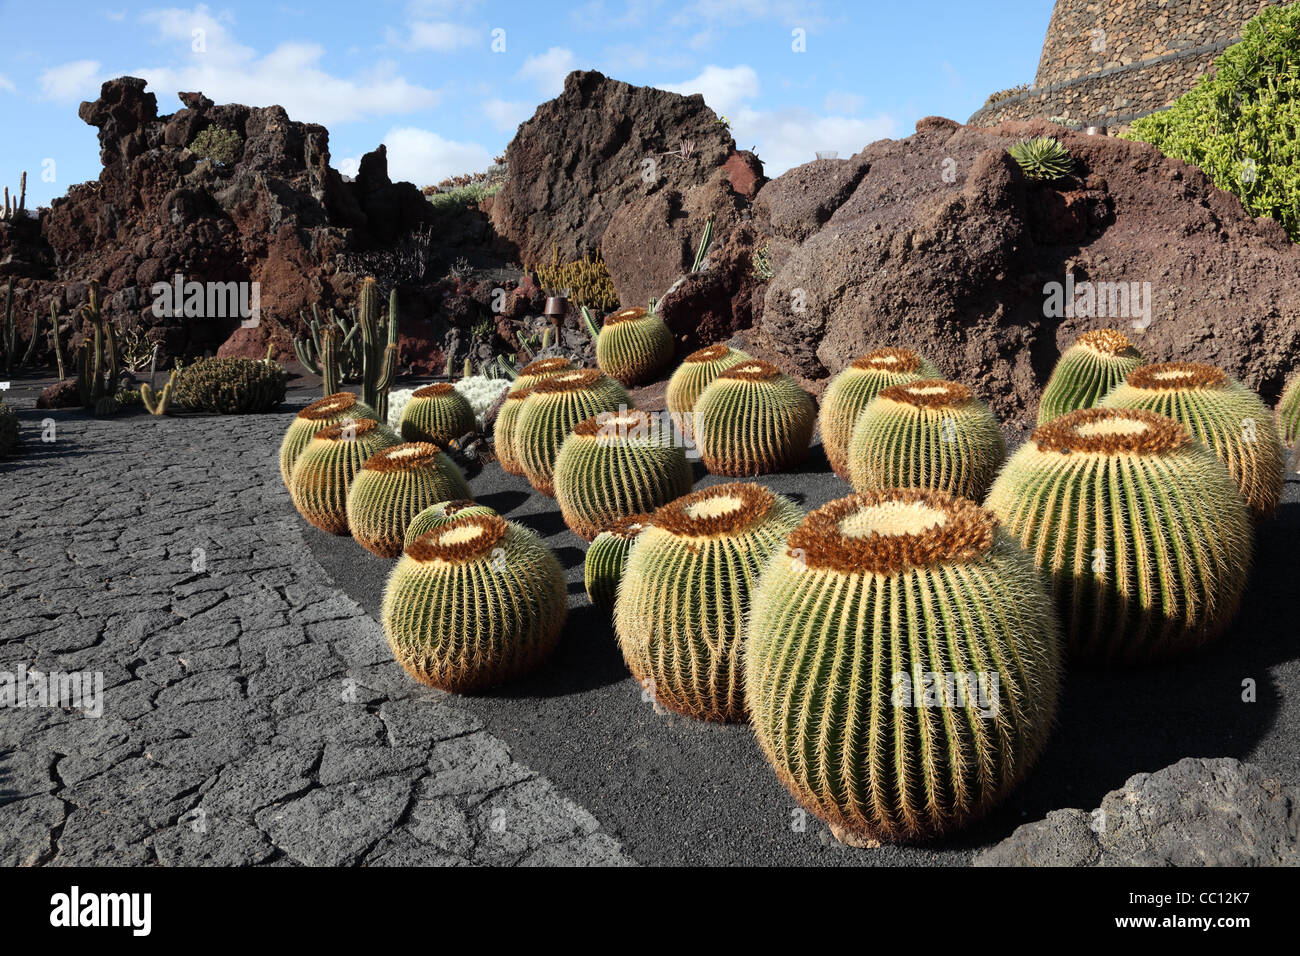 Jardin des cactus - Jardin de Cactus - sur l'île des Canaries Lanzarote, Espagne. Banque D'Images